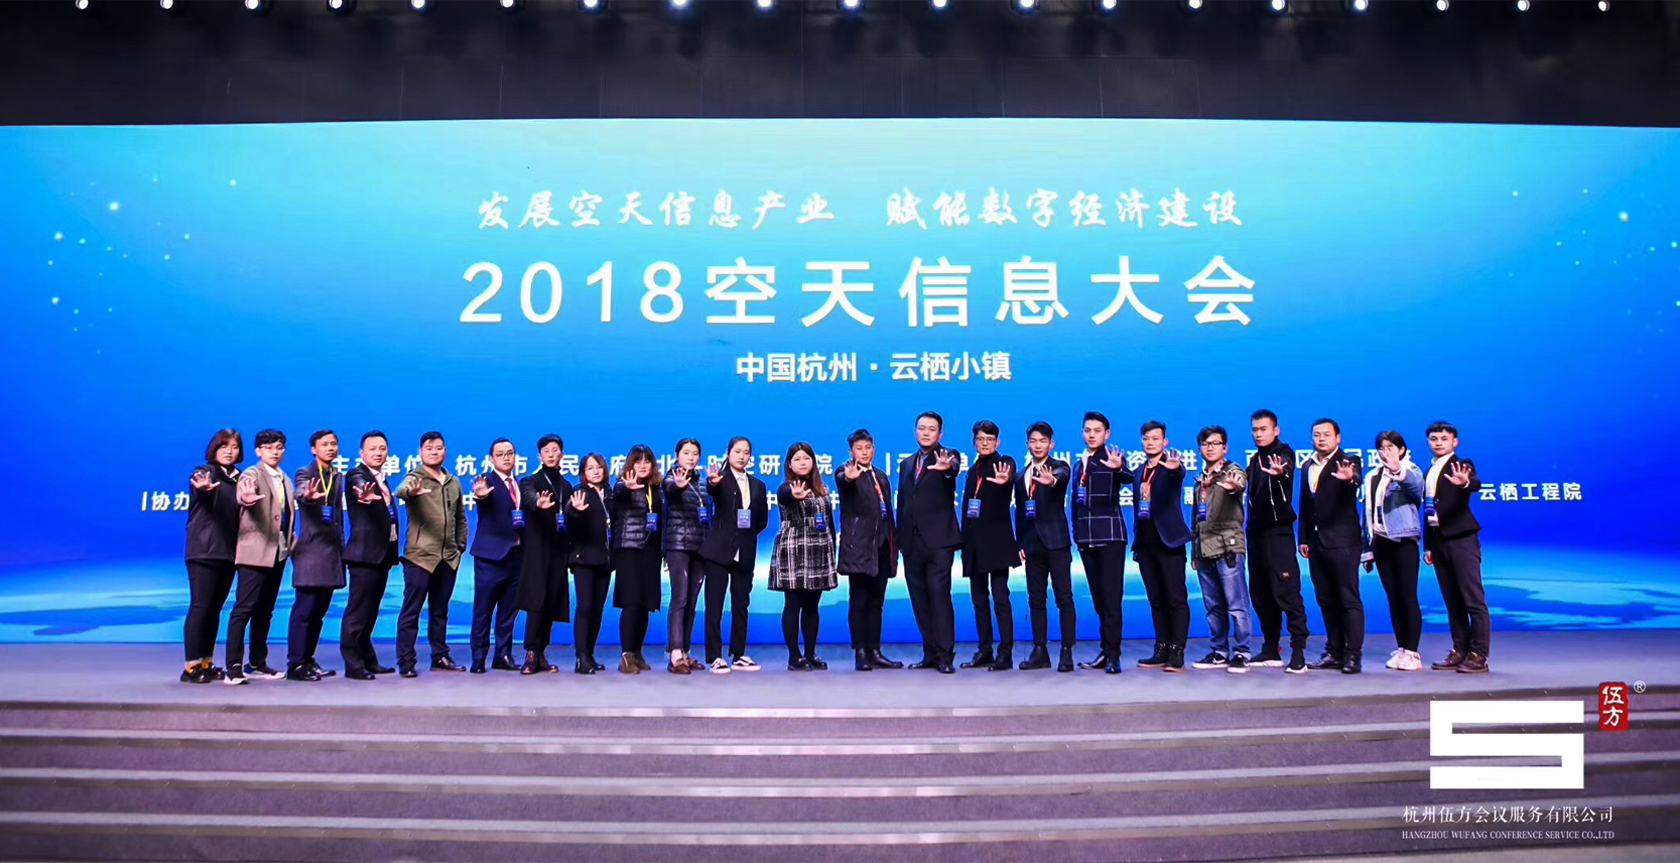 2018空天信息大会 杭州市政府主办行业论坛会议-4